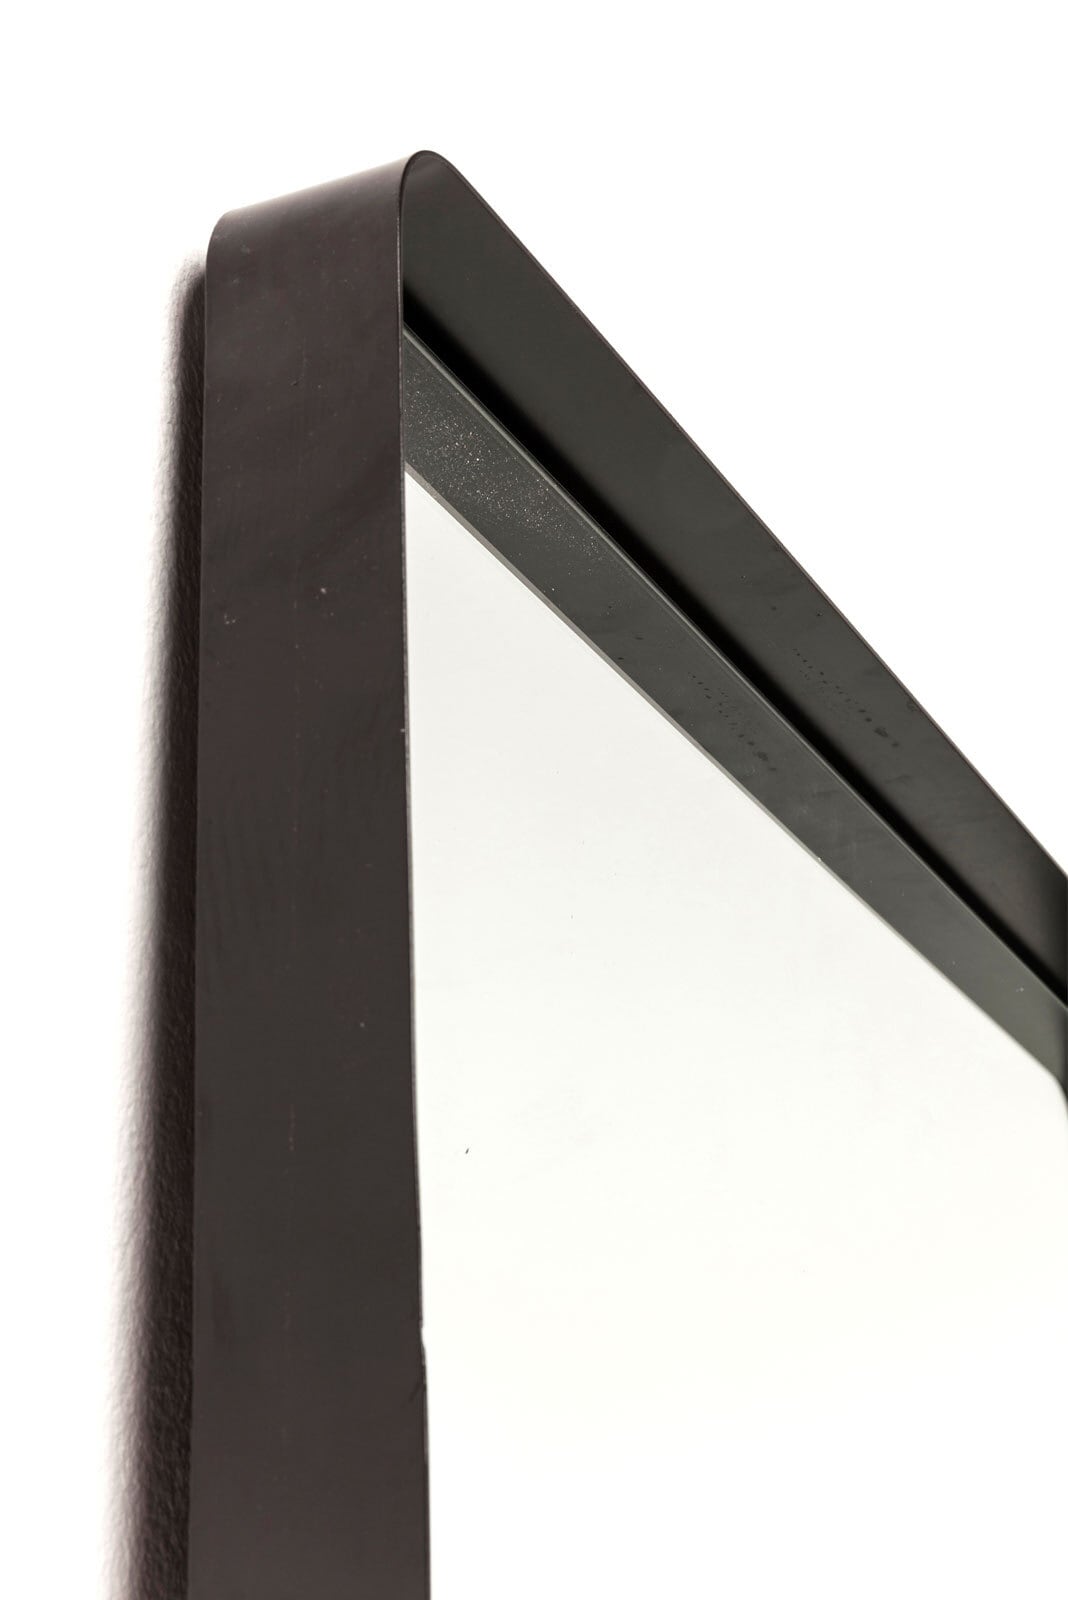 KARE DESIGN Spiegel SHADOW SOFT 200 x 80 cm schwarz